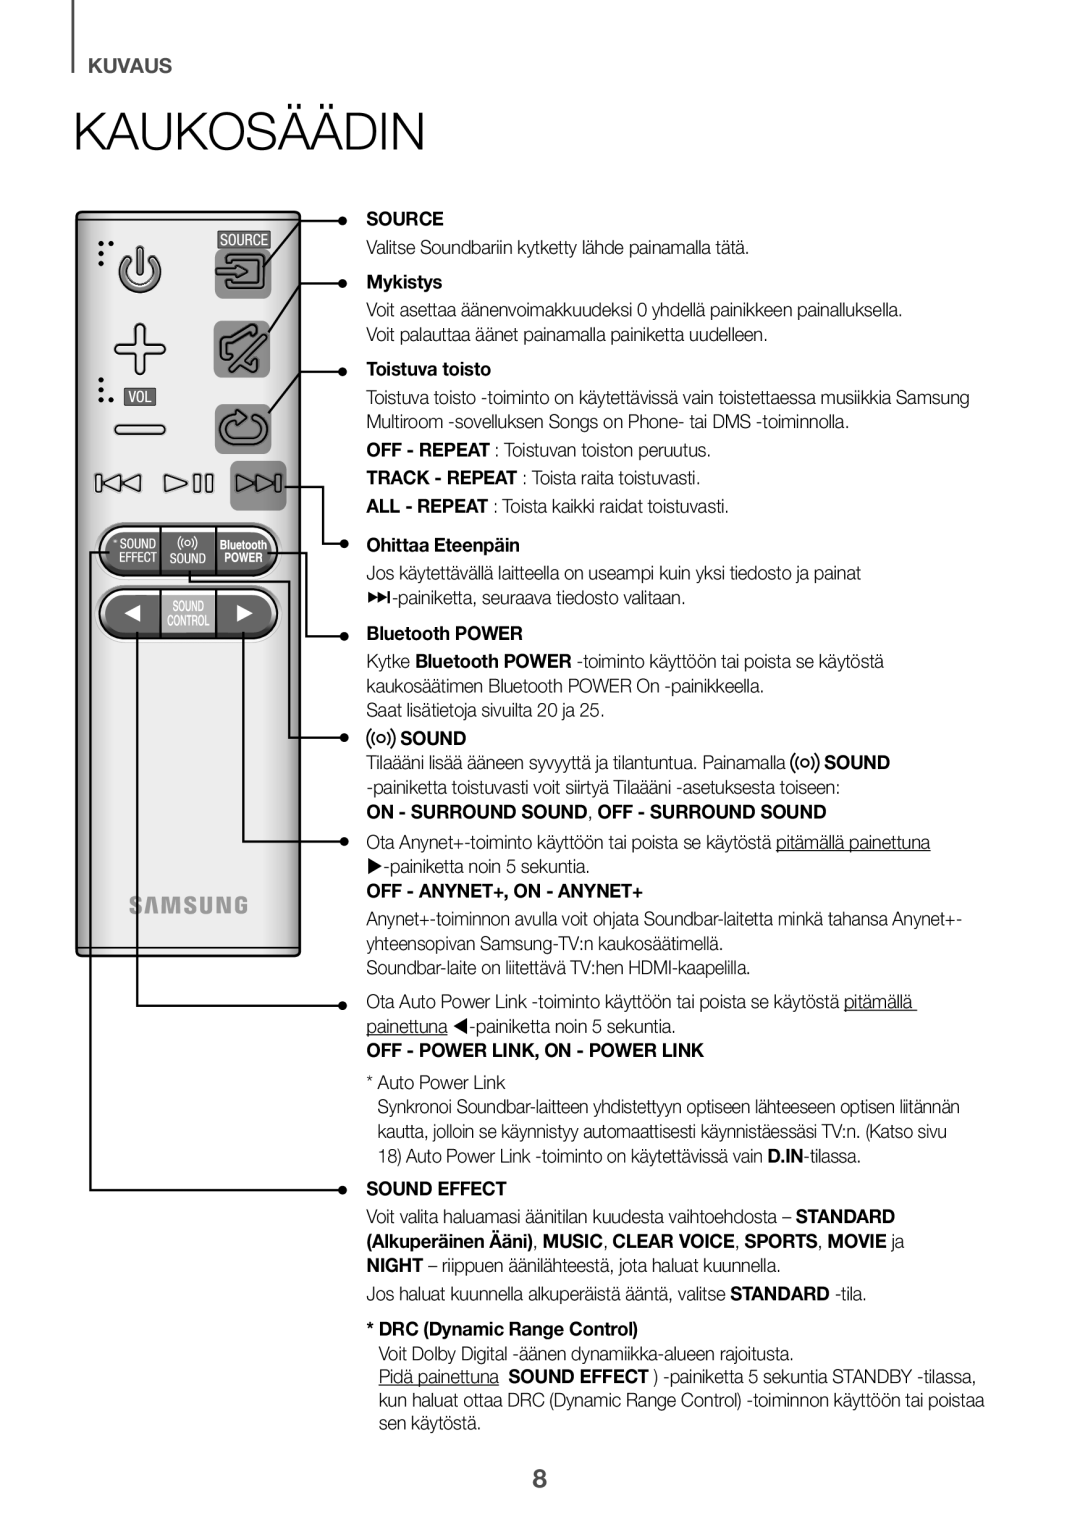 Samsung HW-K651/XN manual Kaukosäädin, kuvaus, Source, Mykistys, Toistuva toisto, Ohittaa Eteenpäin, Bluetooth POWER, Sound 